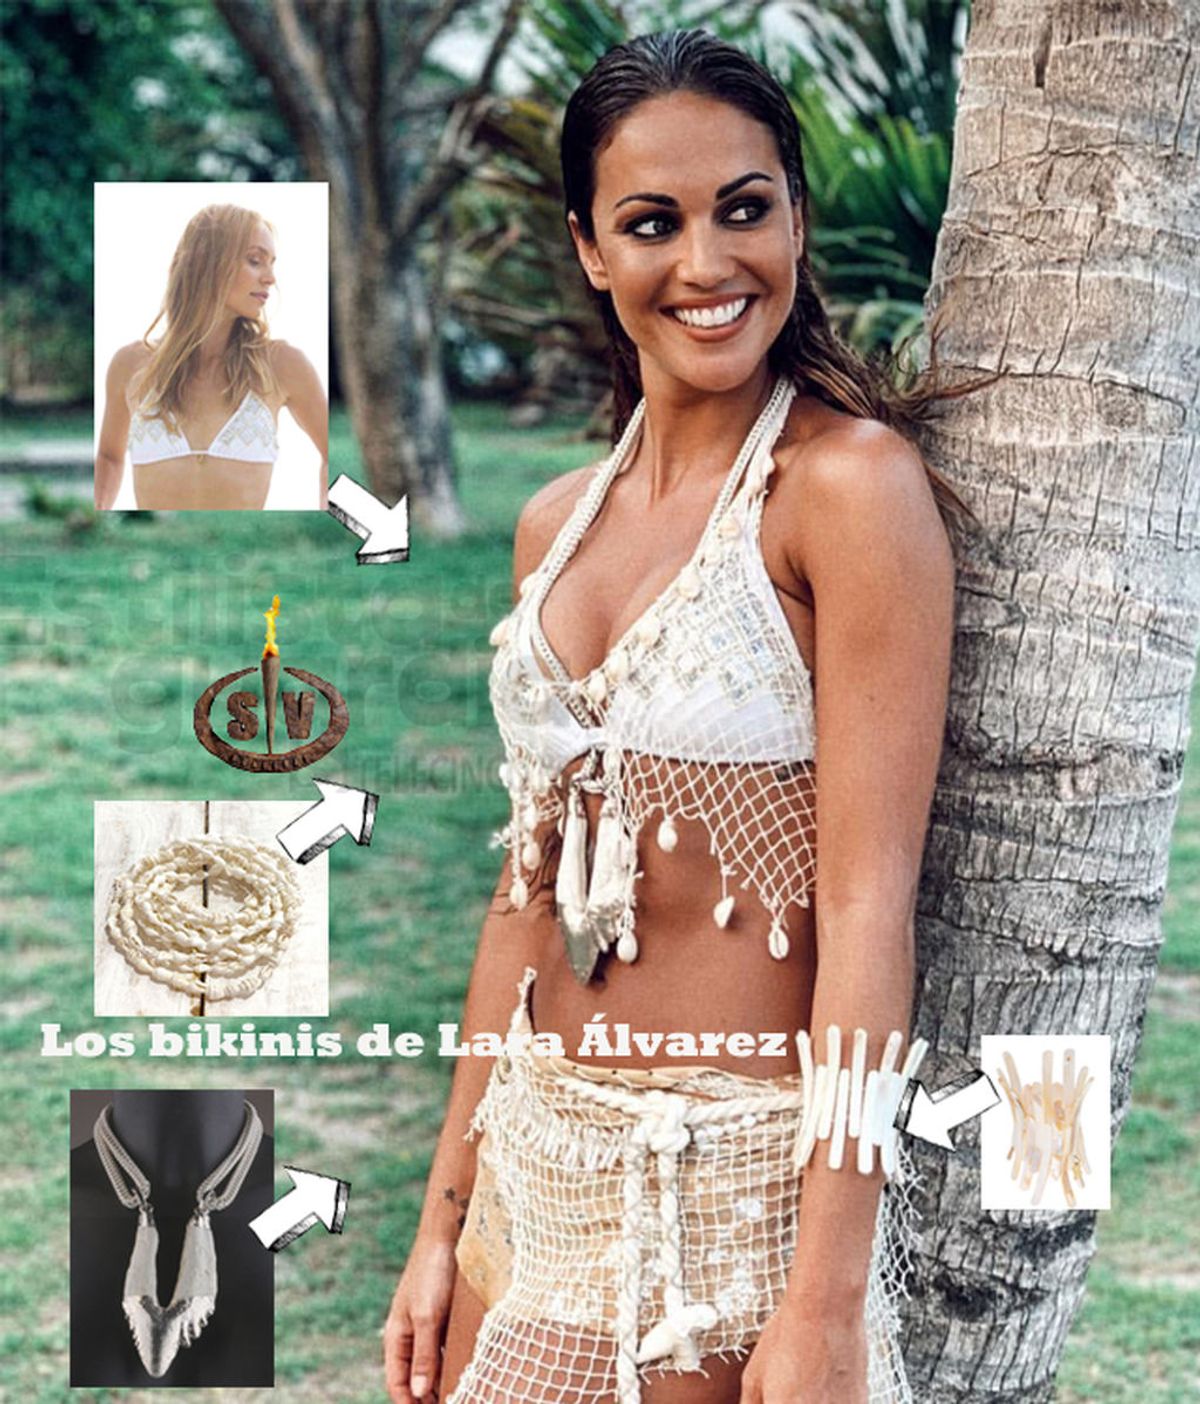 Los bikinis de Lara Álvarez (Supervivientes 2019)